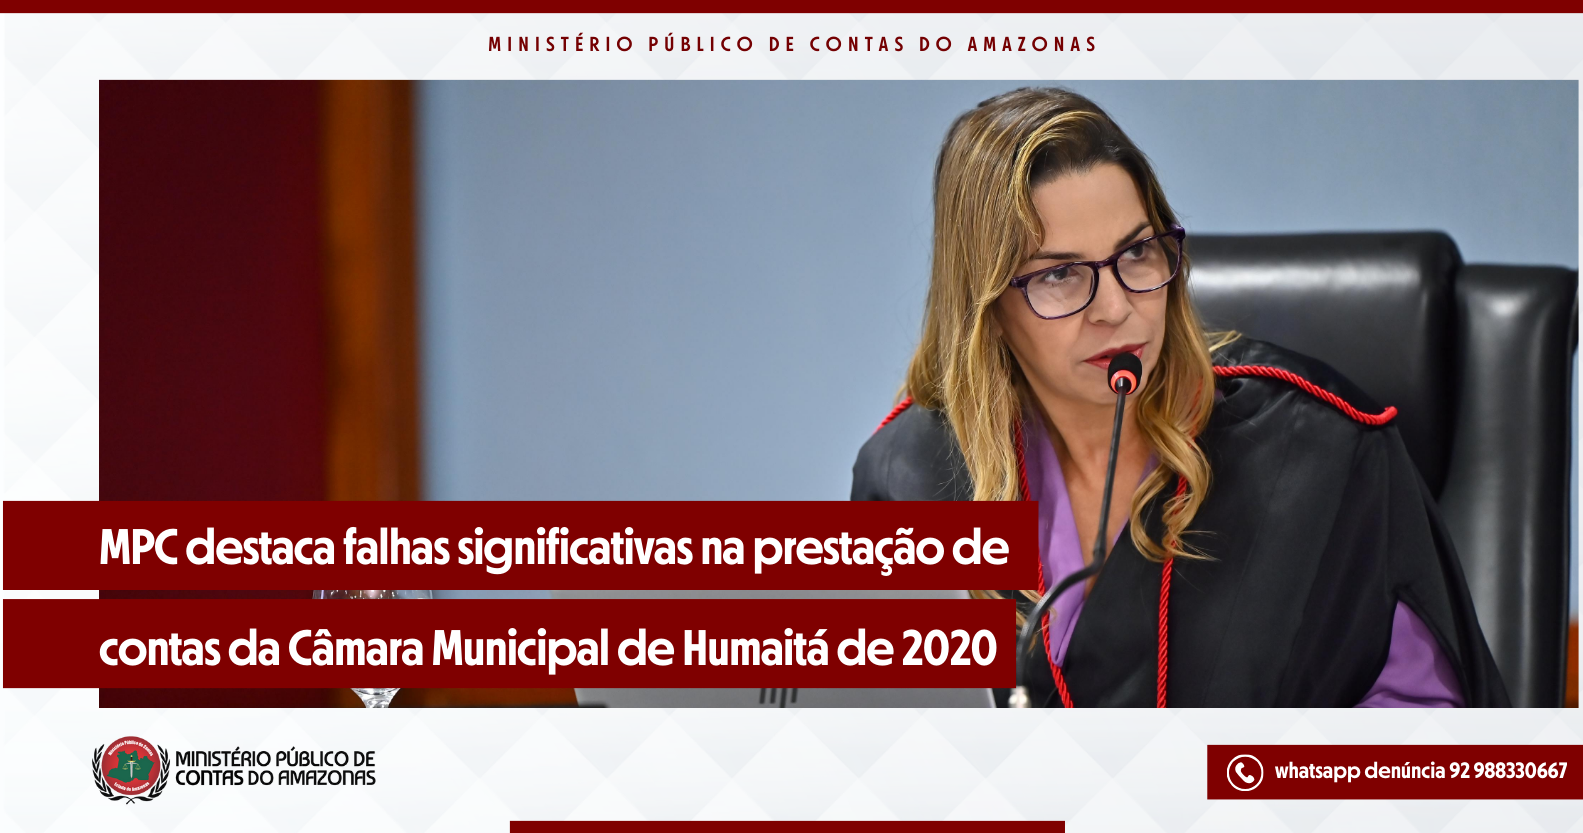 MPC destaca falhas significativas na prestação de contas da Câmara Municipal de Humaitá de 2020